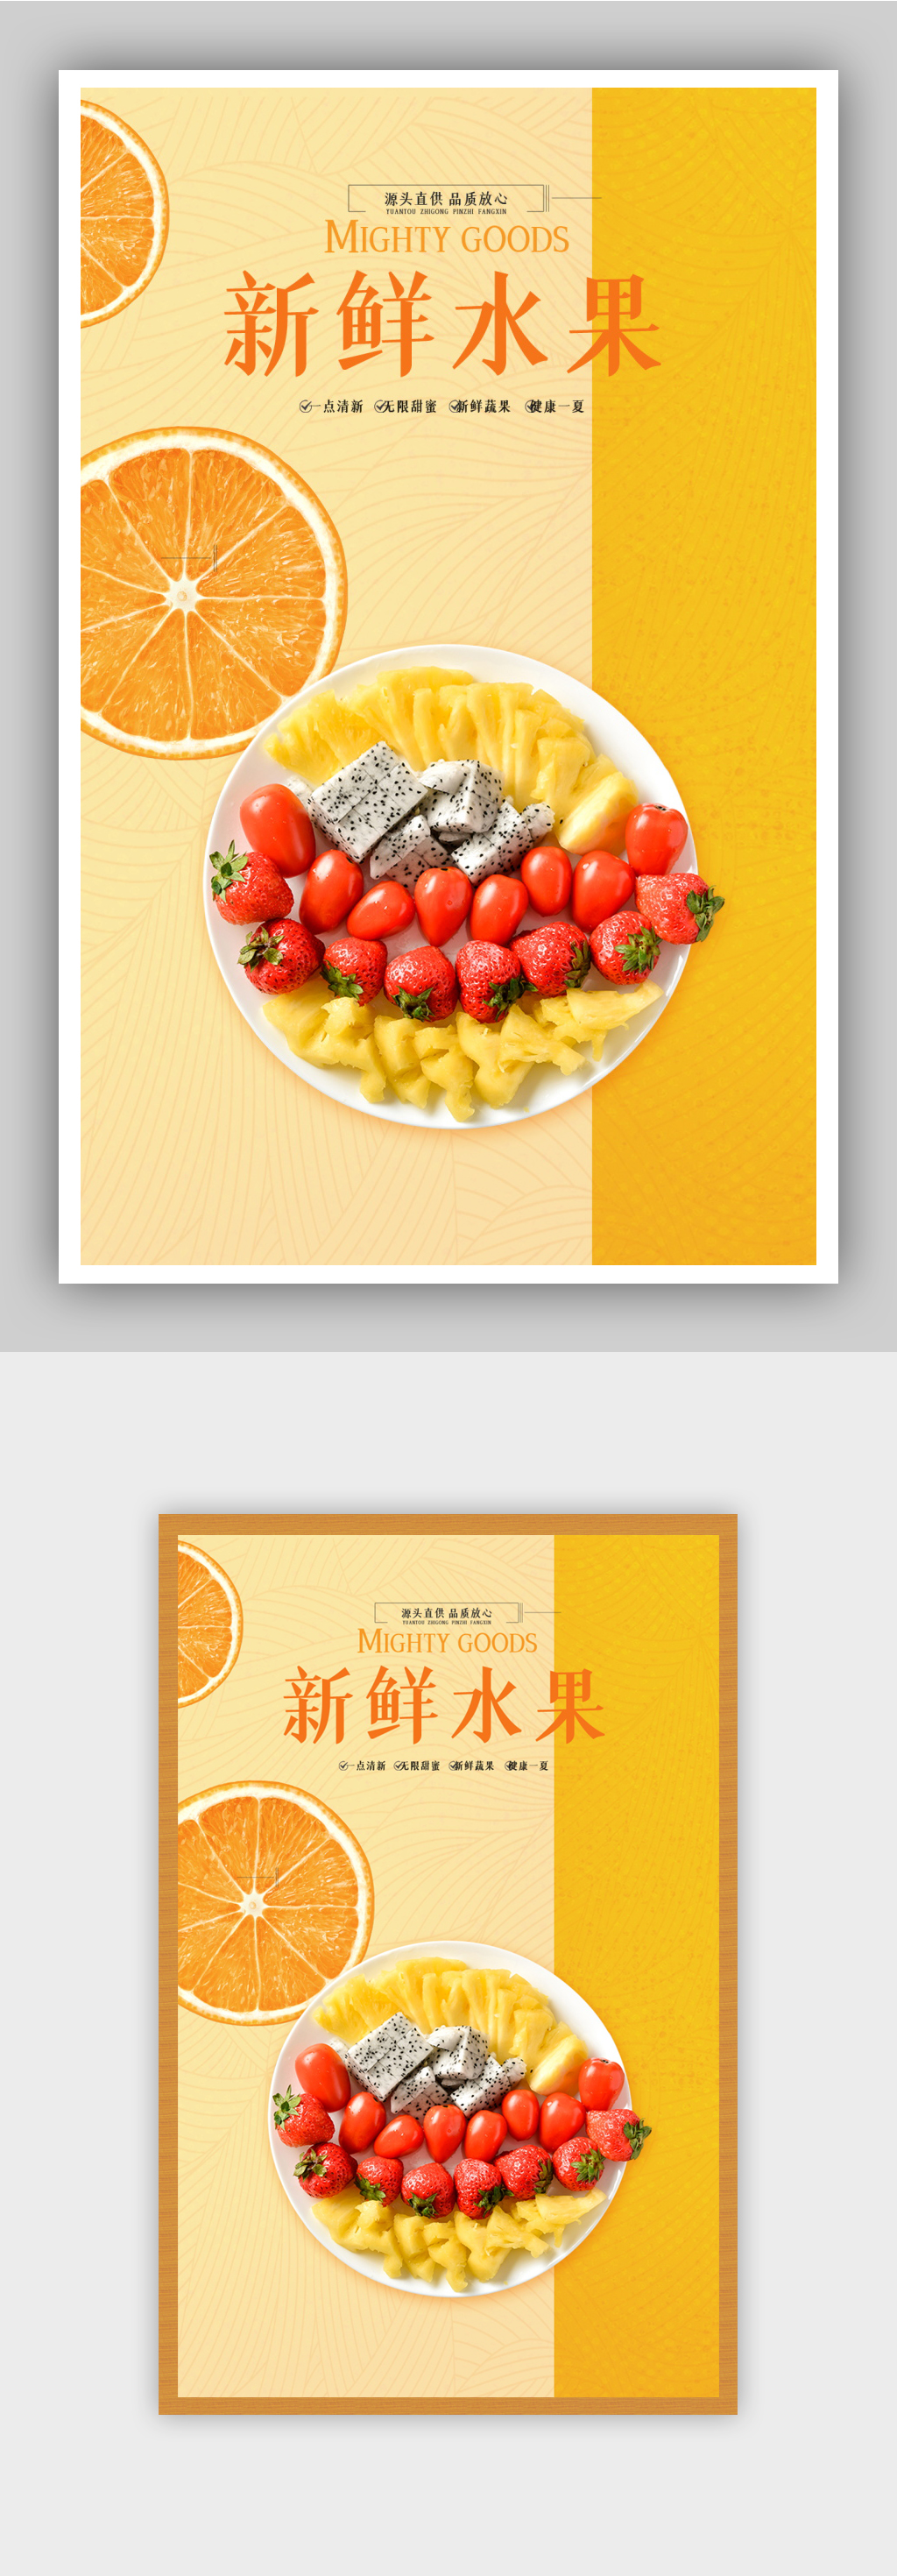 水果拼盘创意广告语图片